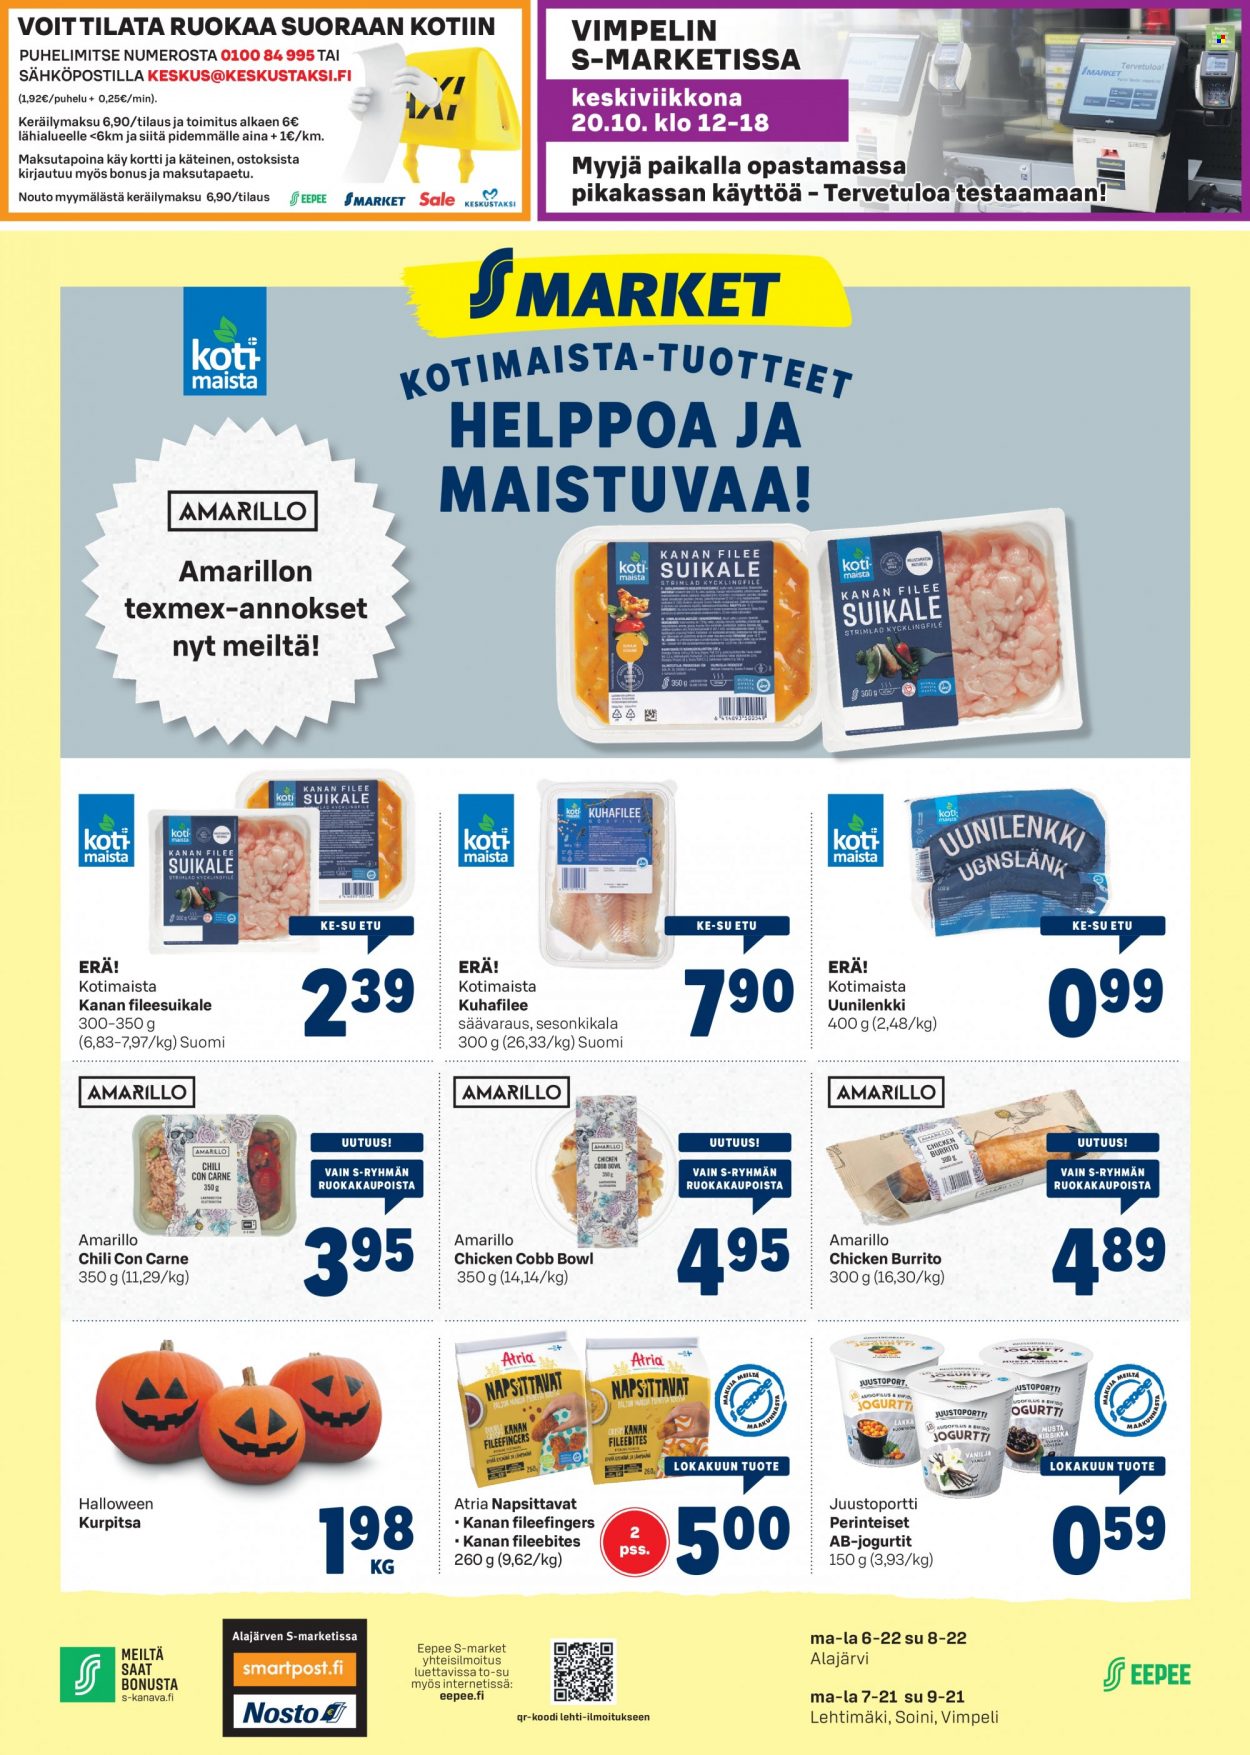 thumbnail - S-market tarjoukset  - 13.10.2021 - 17.10.2021 - Tarjoustuotteet - kurpitsa, kanan, kanan fileesuikale, Atria, jogurtit. Sivu 1.